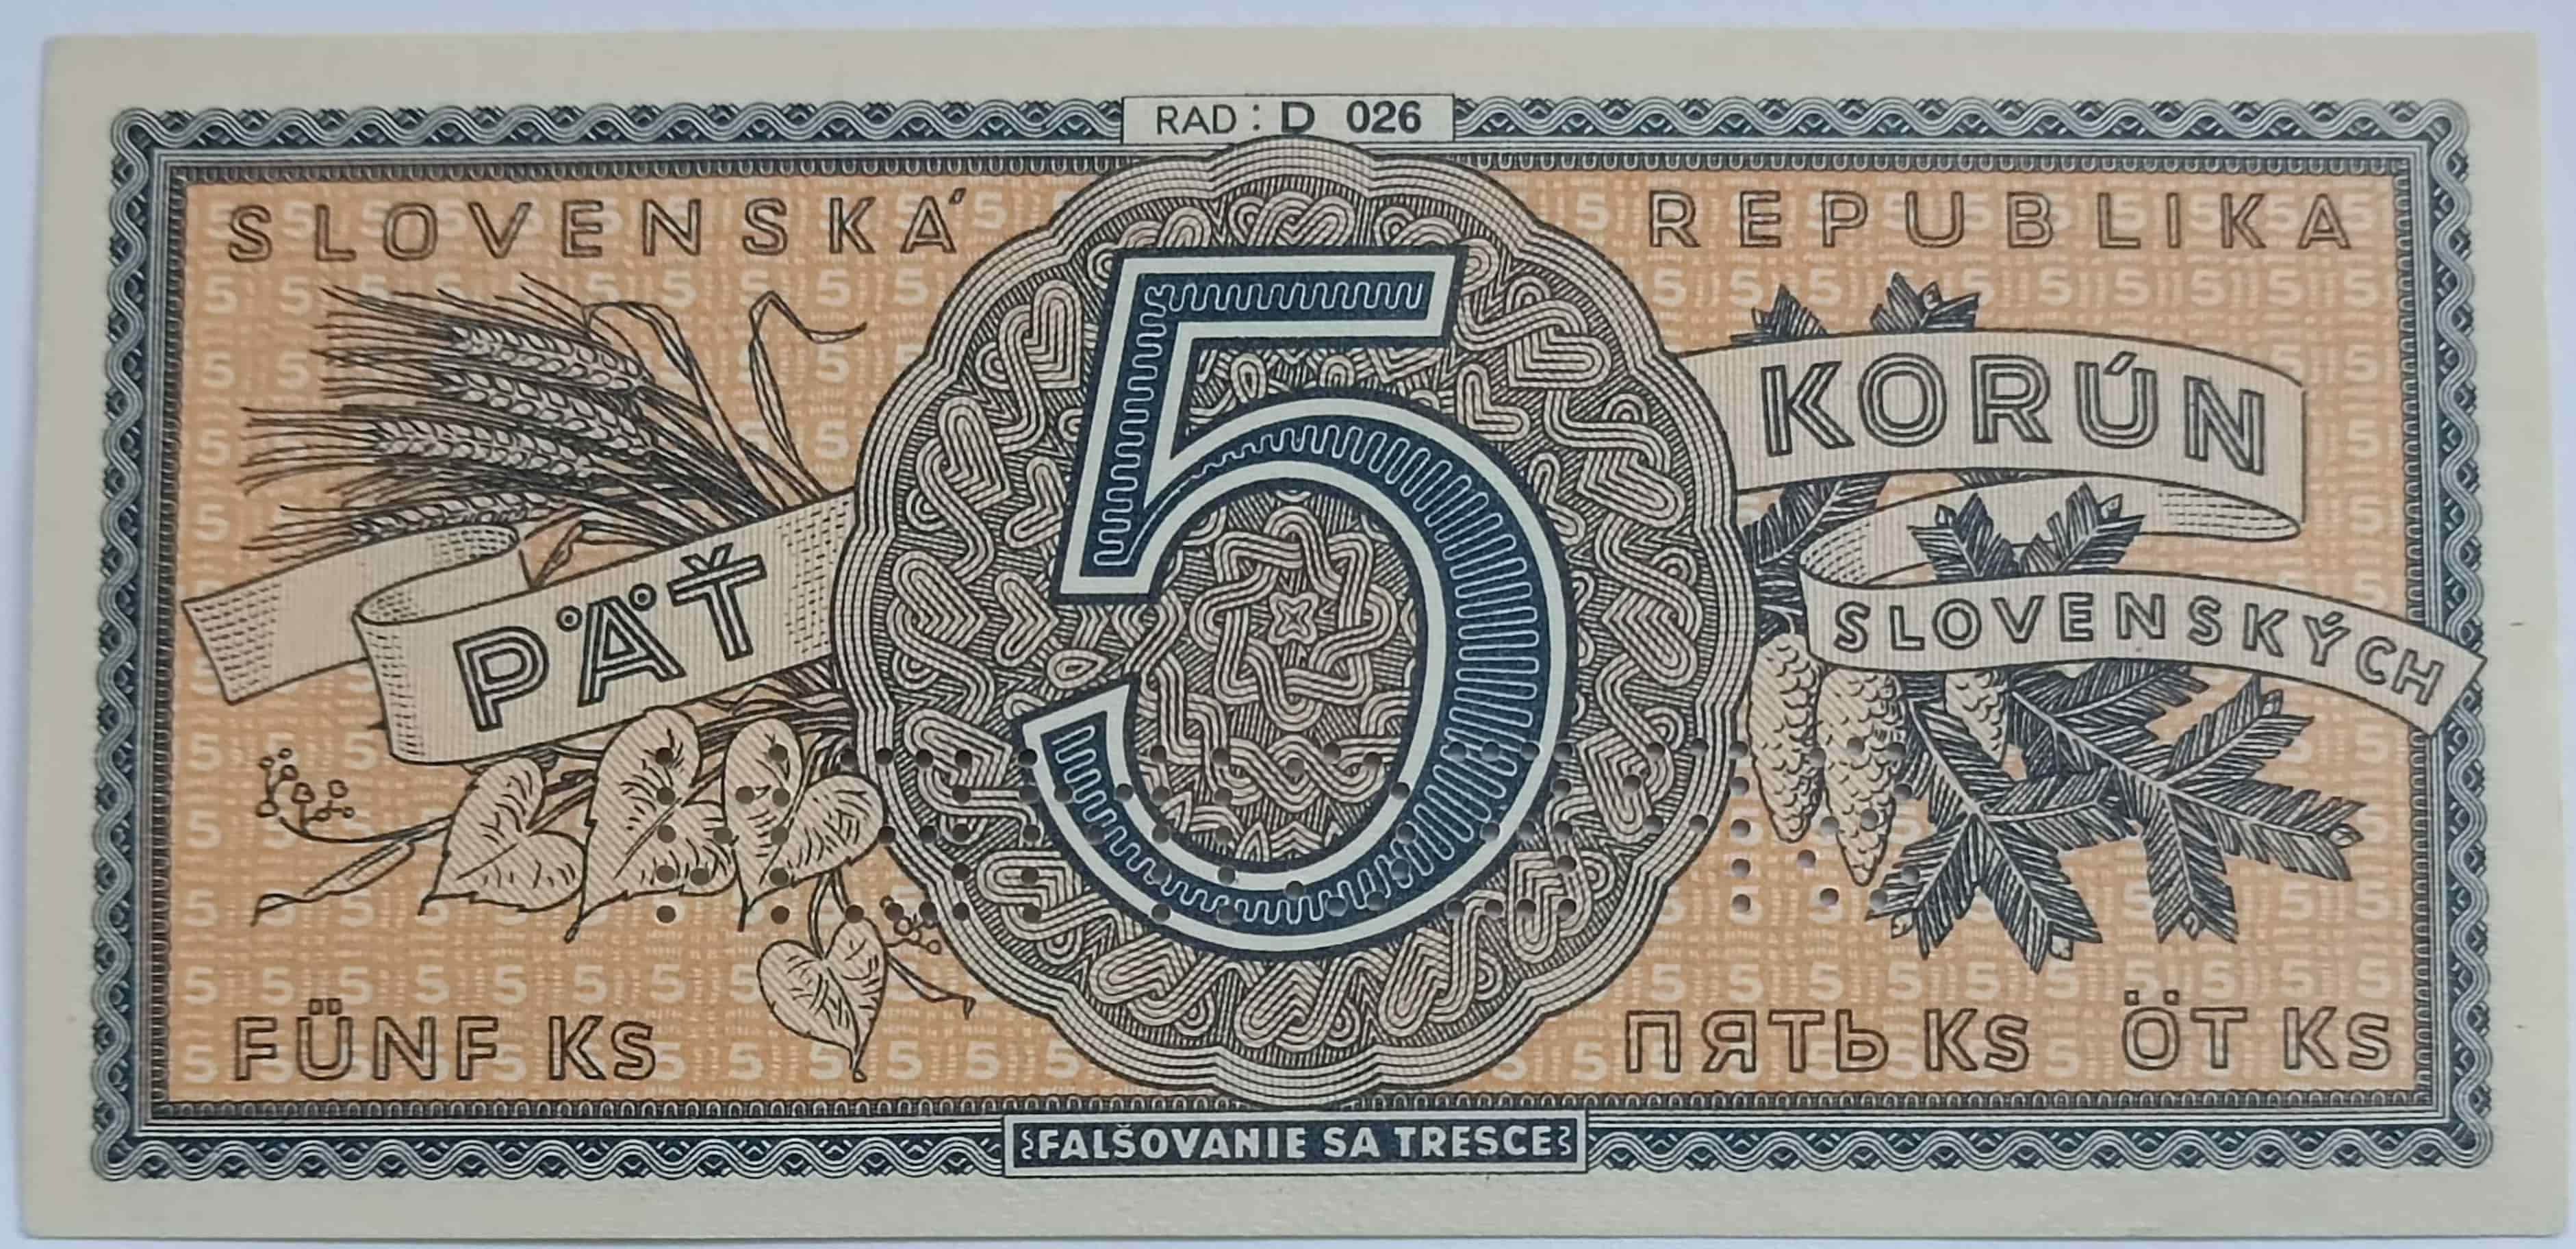 5Ks 1945 D026